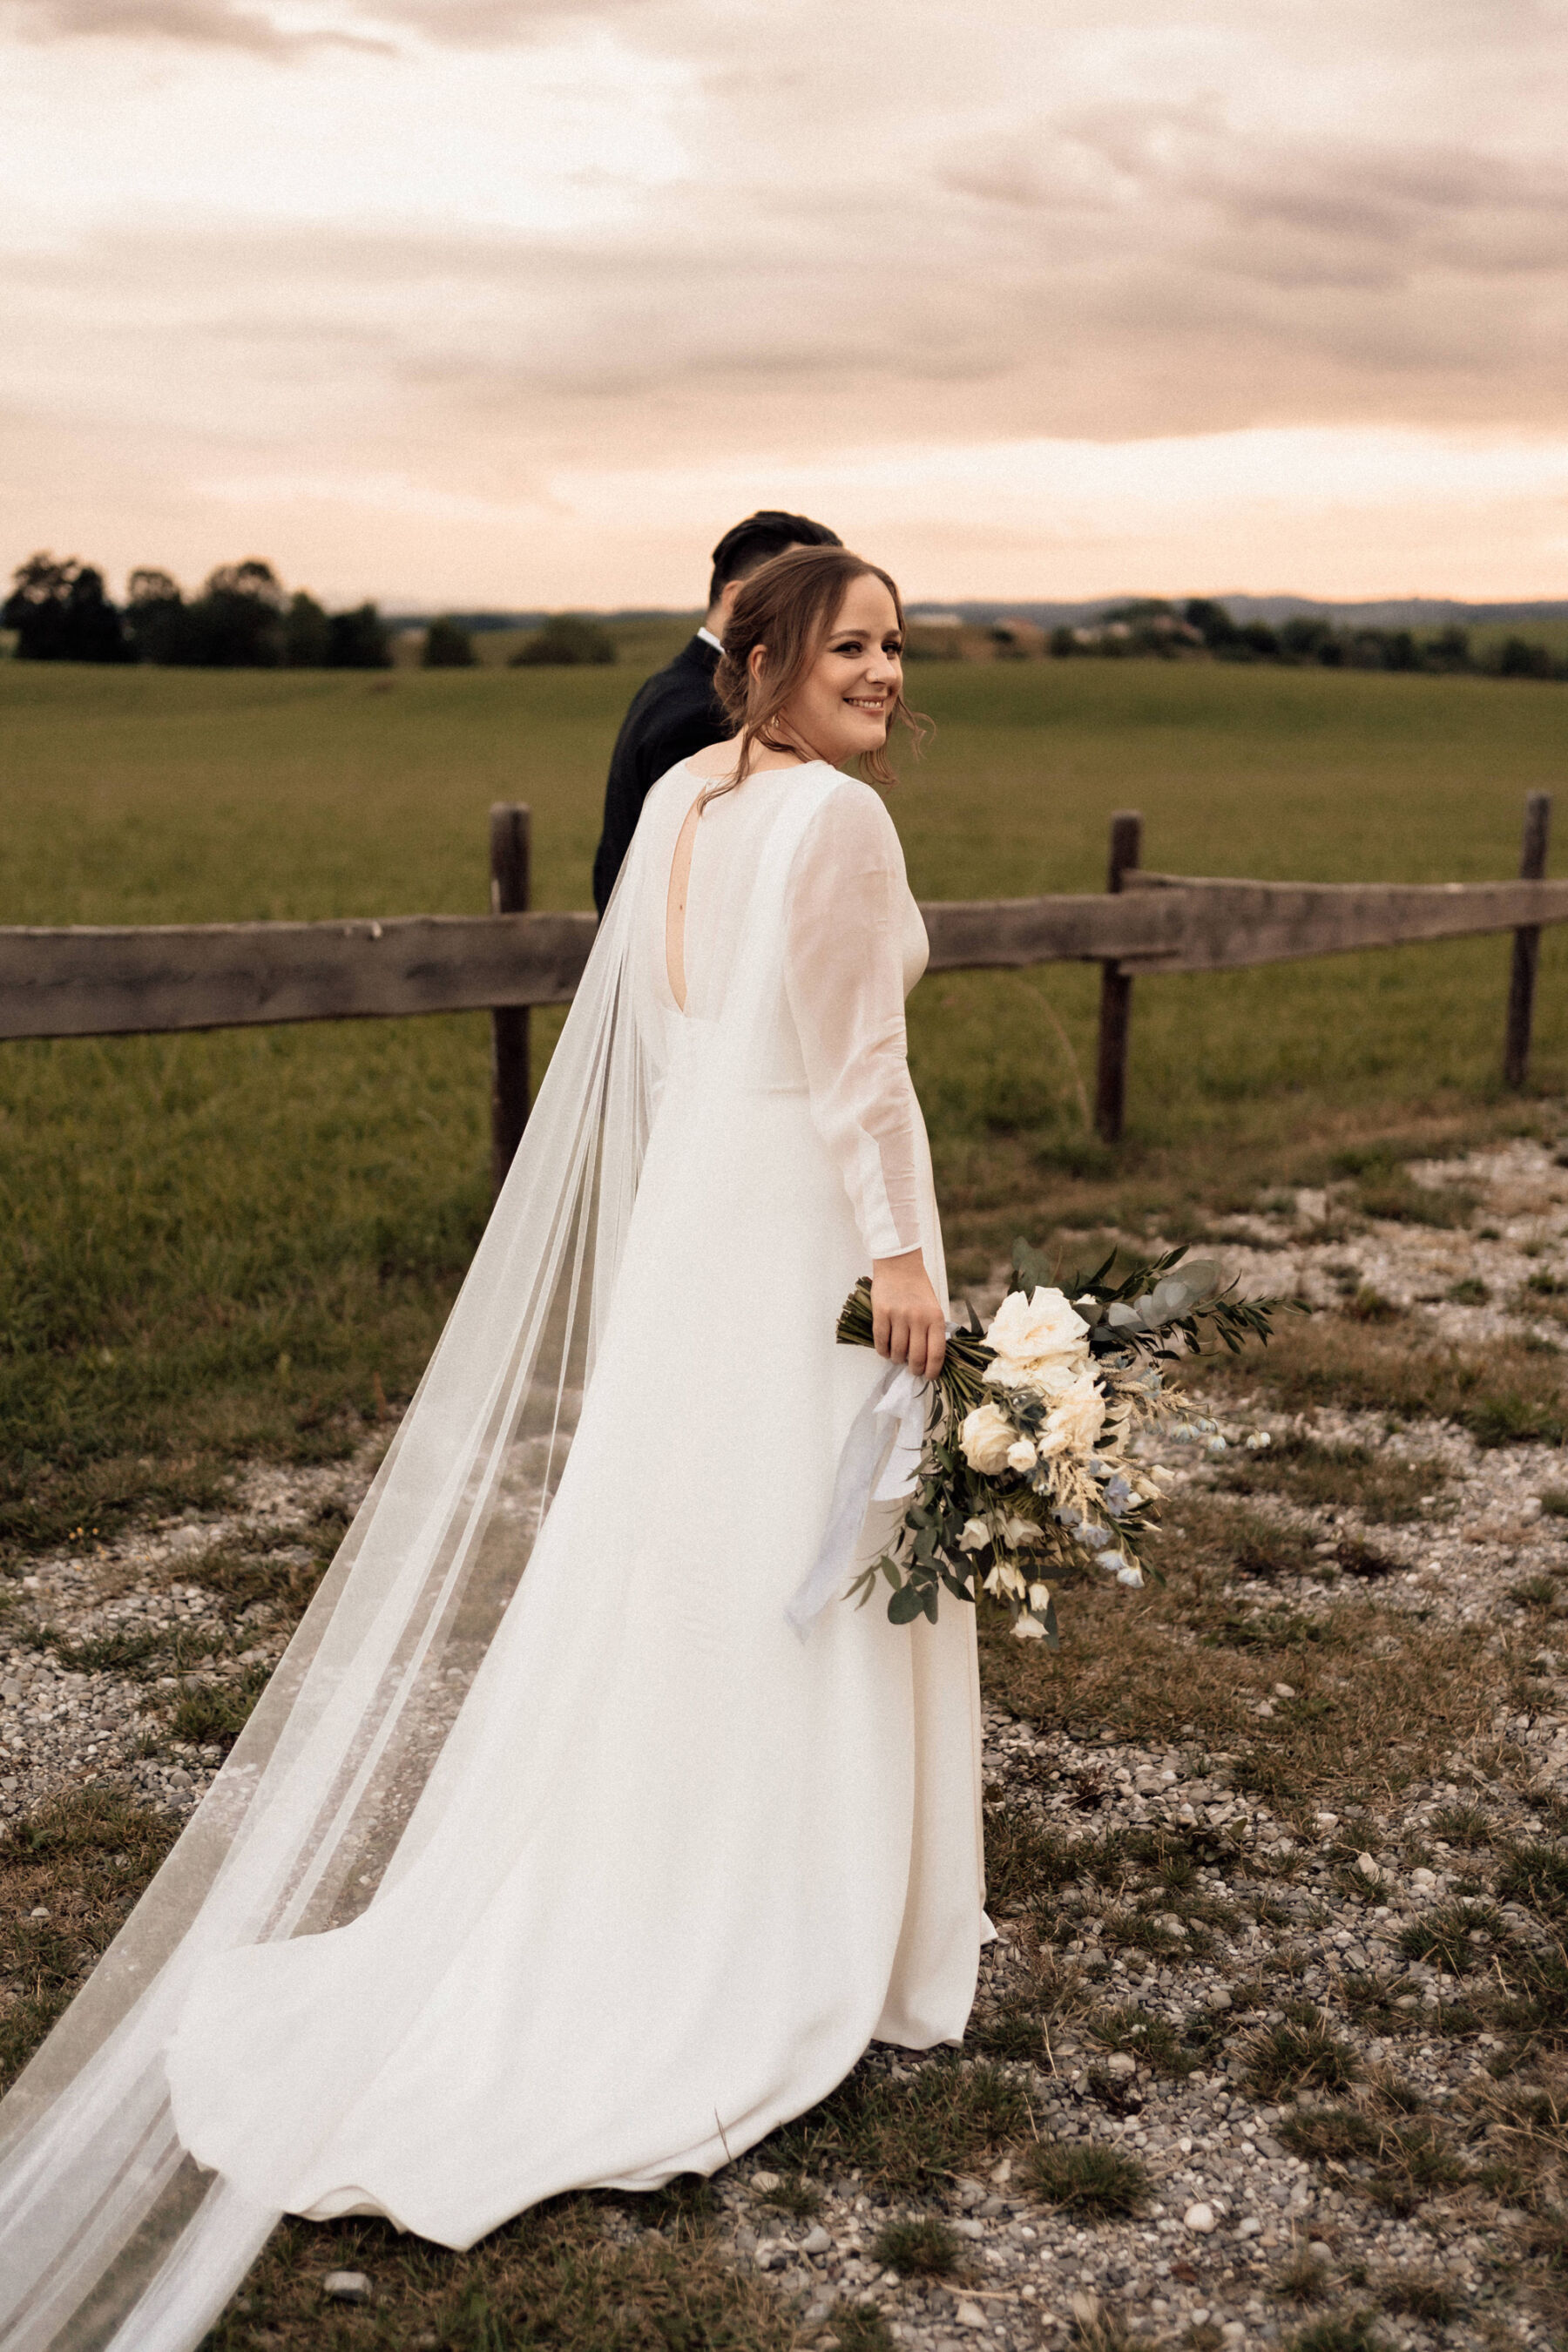 Andrea Hawkes Bridal wedding dress with long sheer sleeves